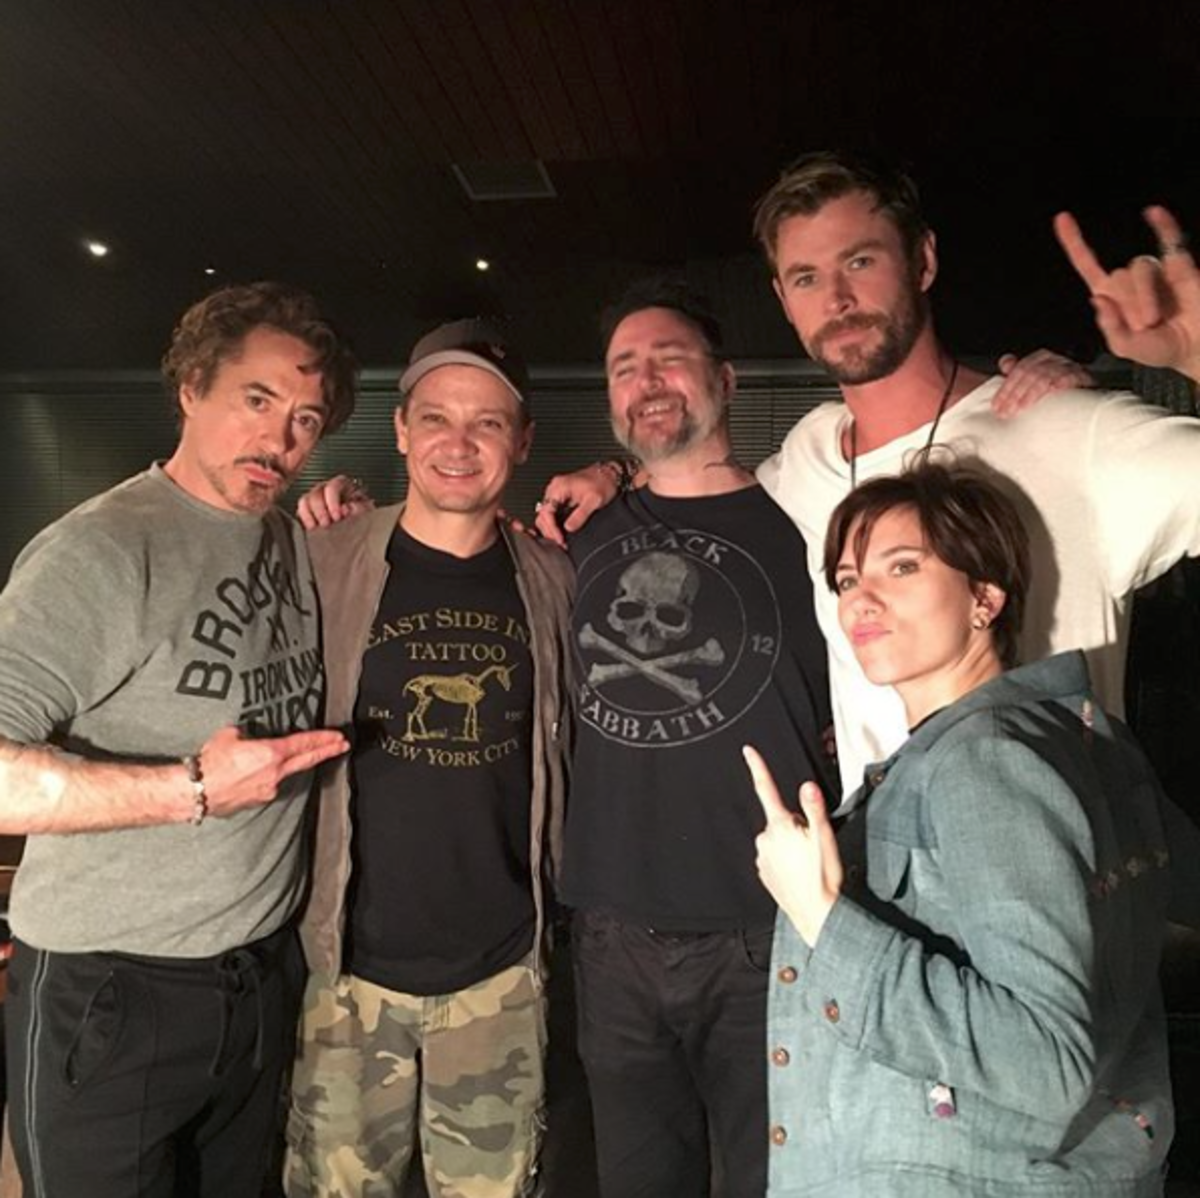 Fra venstre til høyre: Robert Downey Jr., Jeremy Renner, Josh Lord, Chris Hemsworth og Scarlett Johansson